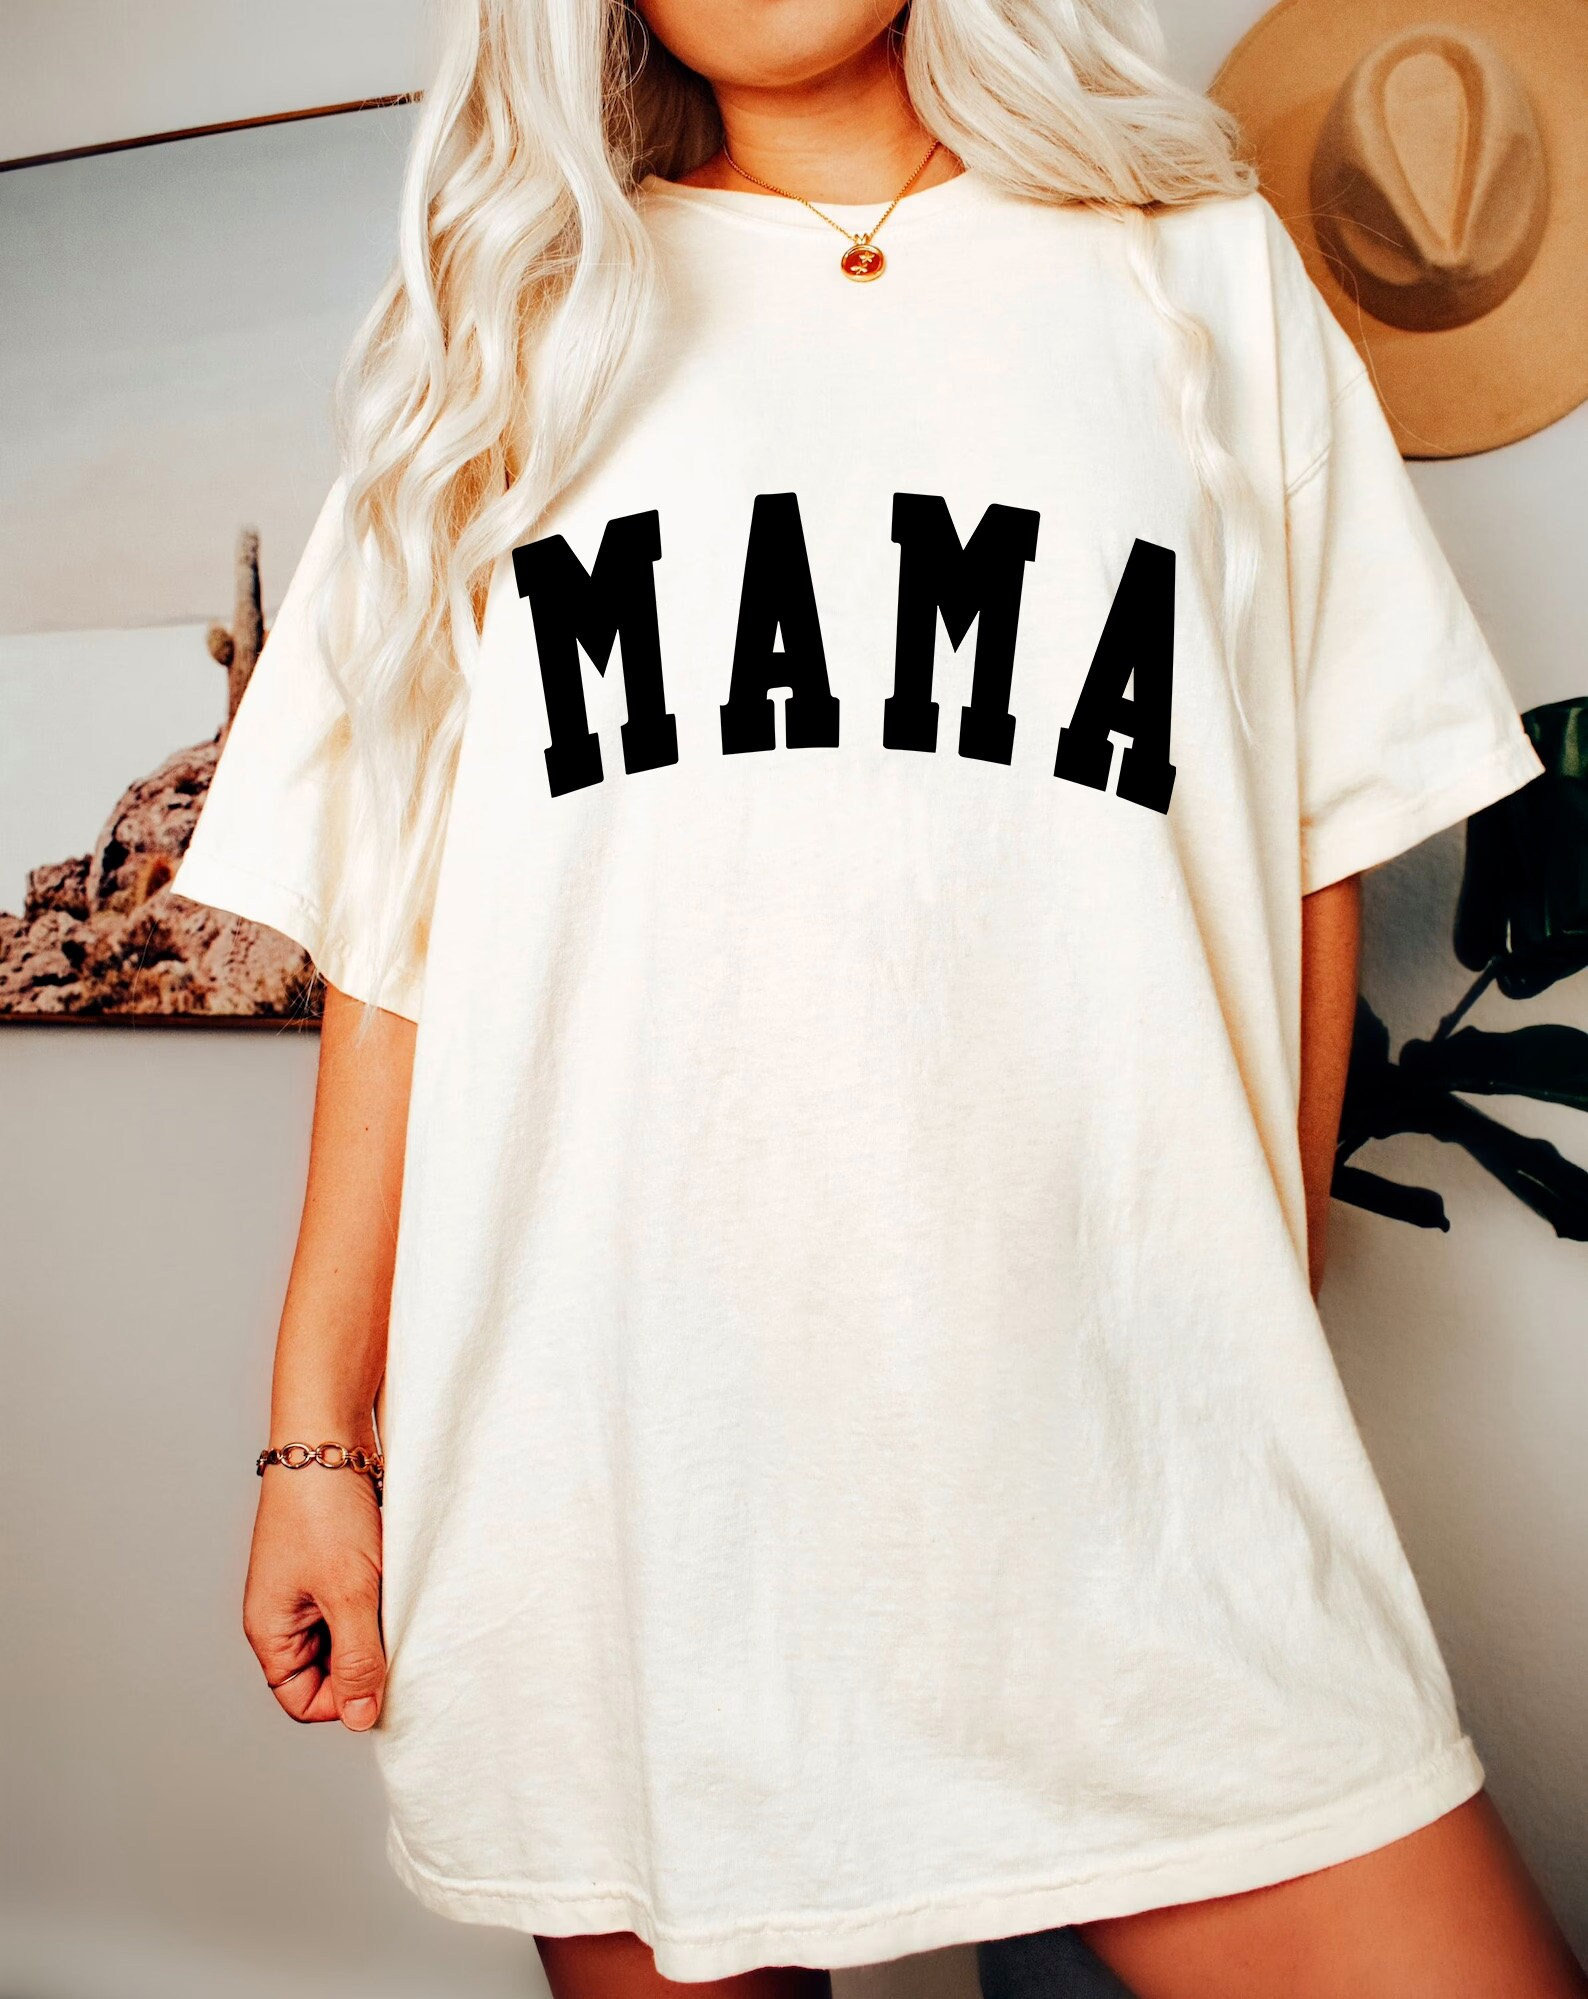 Mama Shirt -mom shirt,mom sweatshirt,mom gift,mom tee,birthday gift for mom,mom birthday,gift for mom birthday,mothers day shirt,mother tee